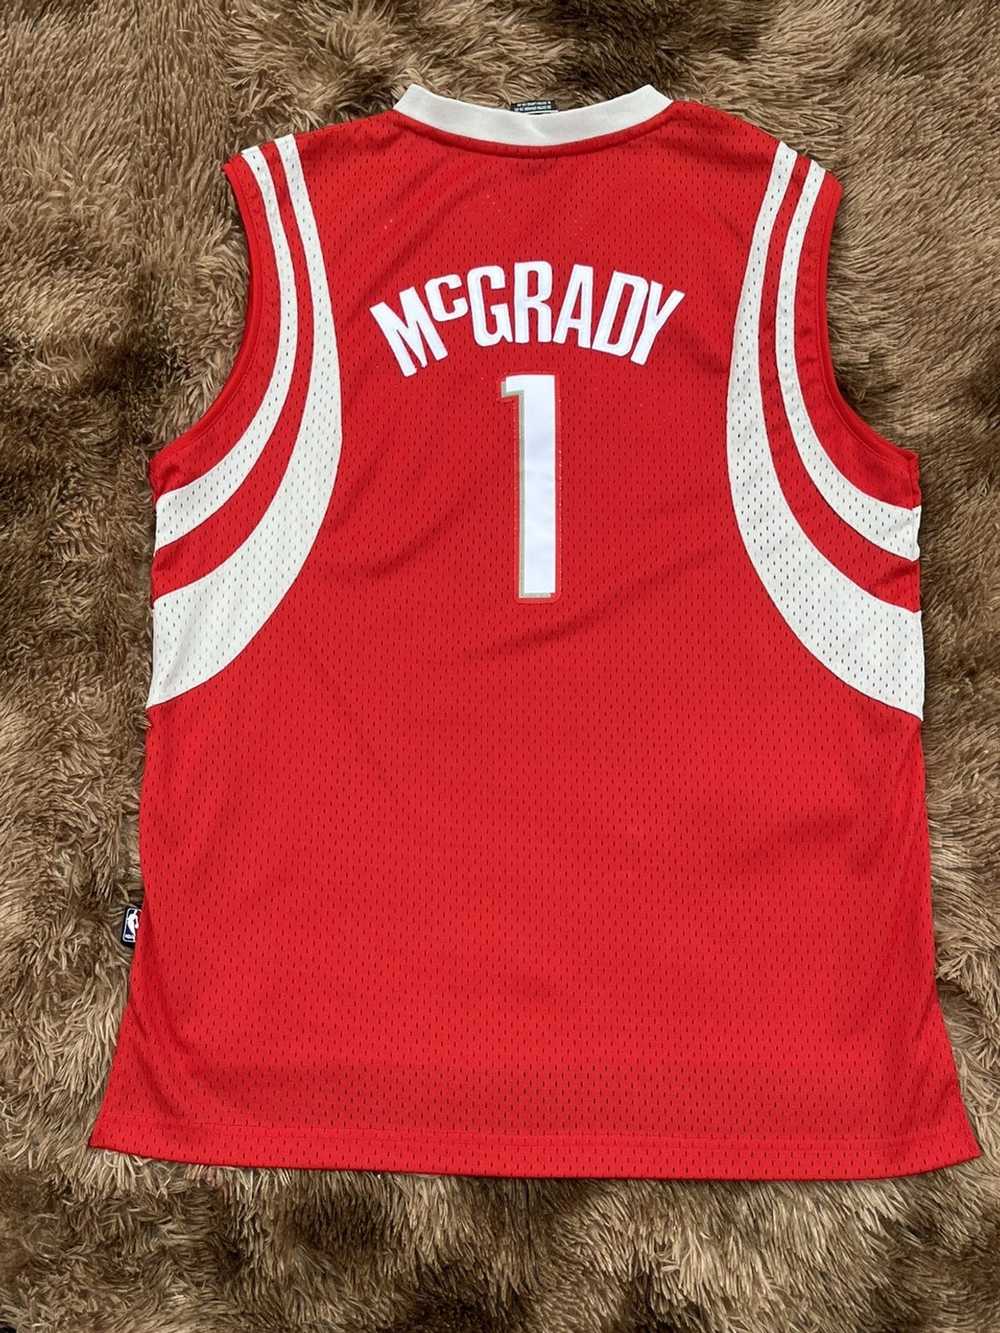 NBA × Reebok Tracy McGrady Stitched reebok jersey - image 4